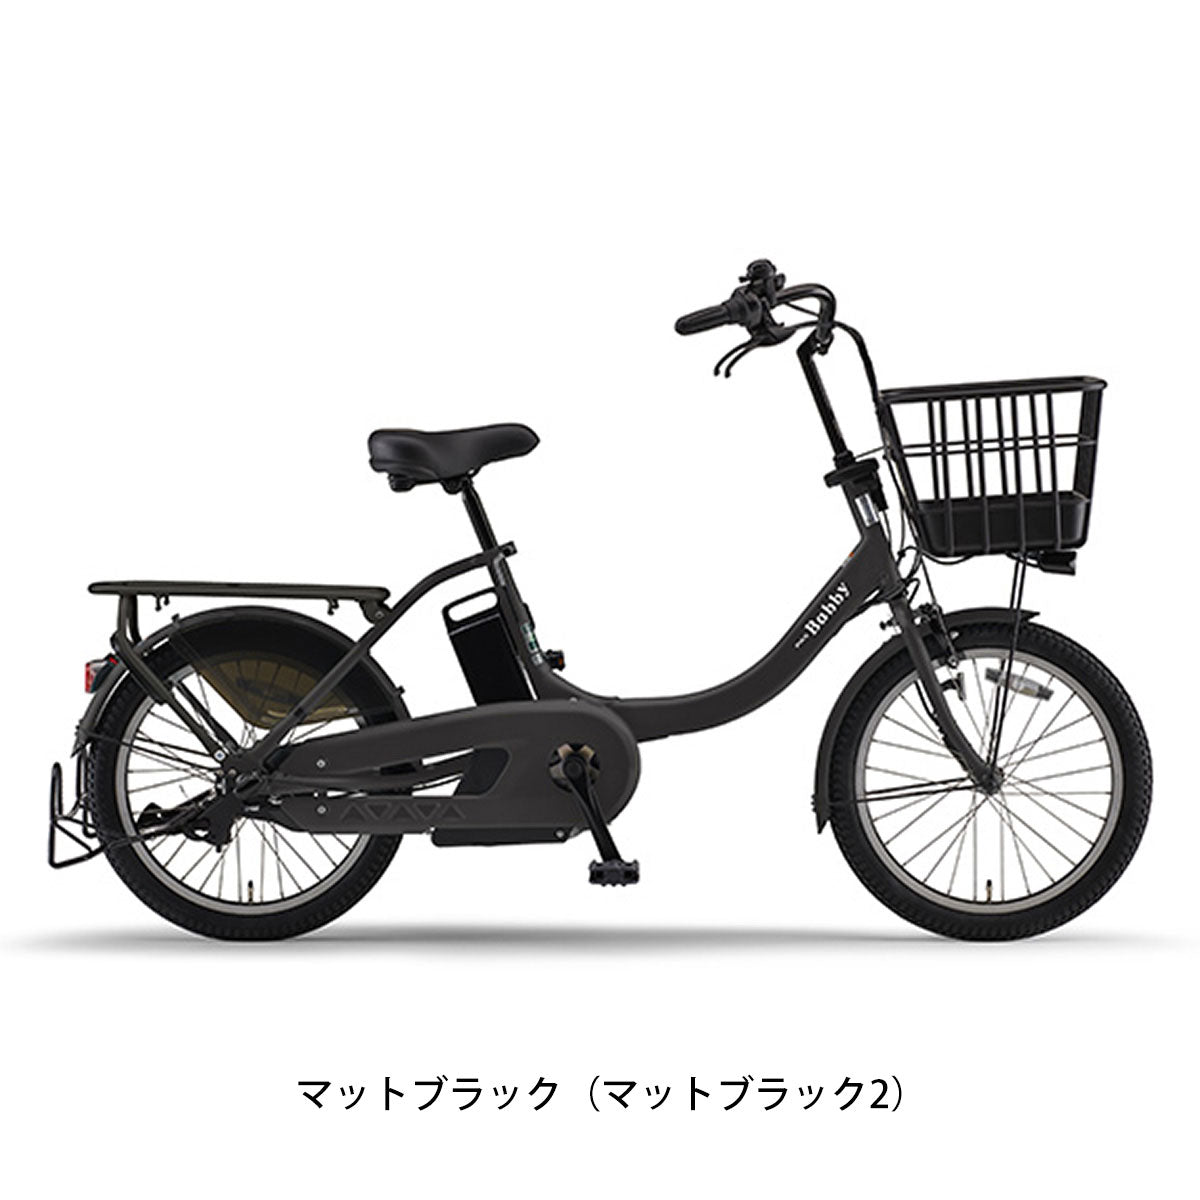 ヤマハ PAS Babby un 電動自転車 15.8Ah 20インチ